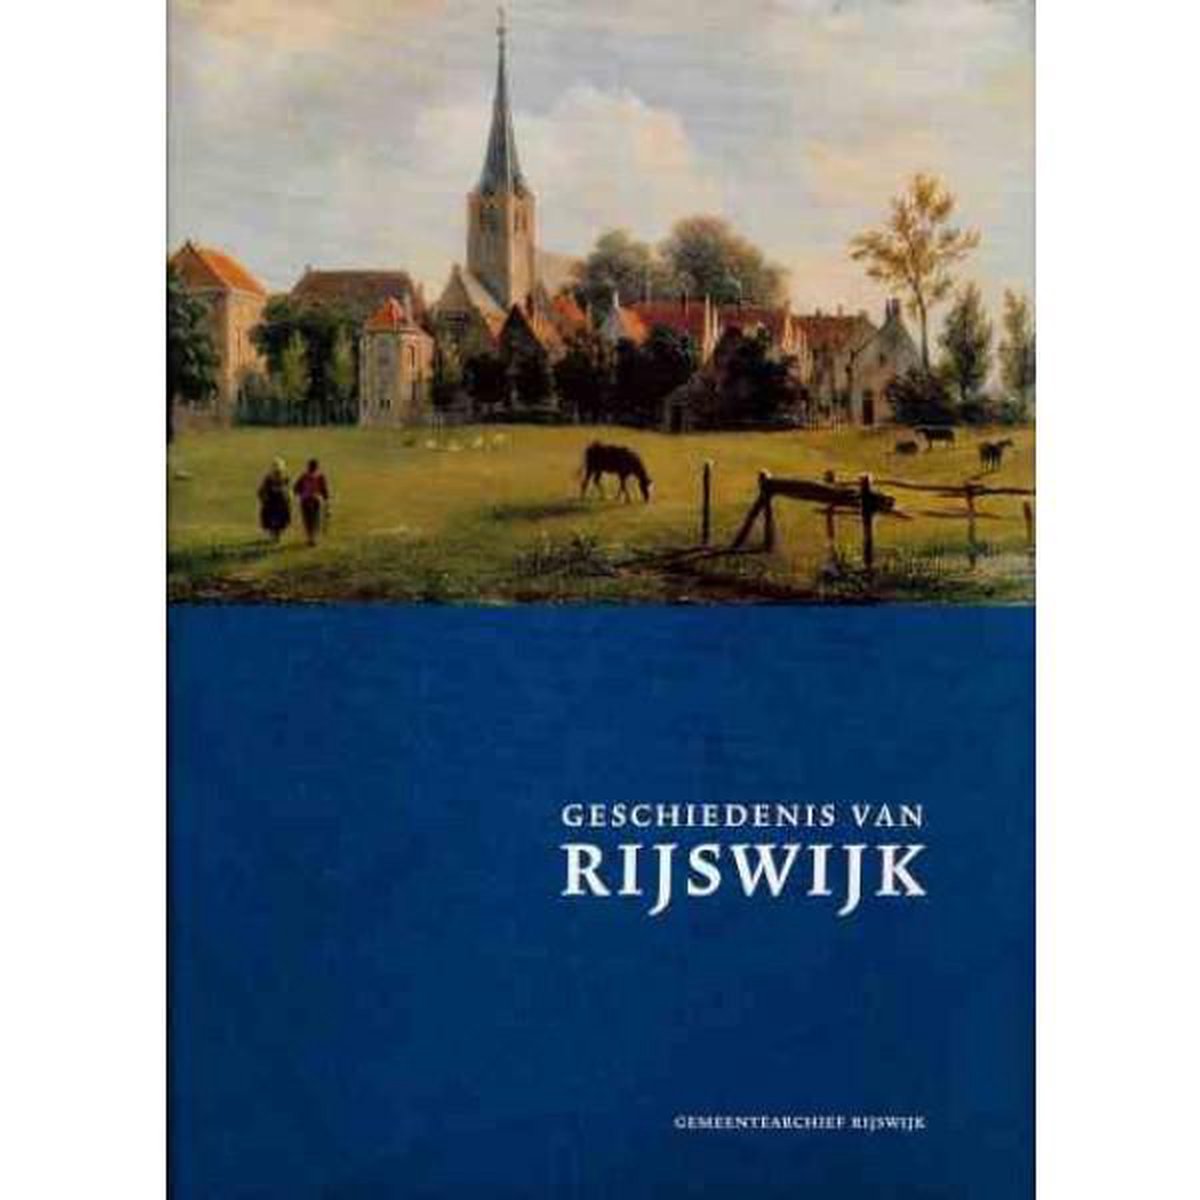 Geschiedenis van Rijswijk